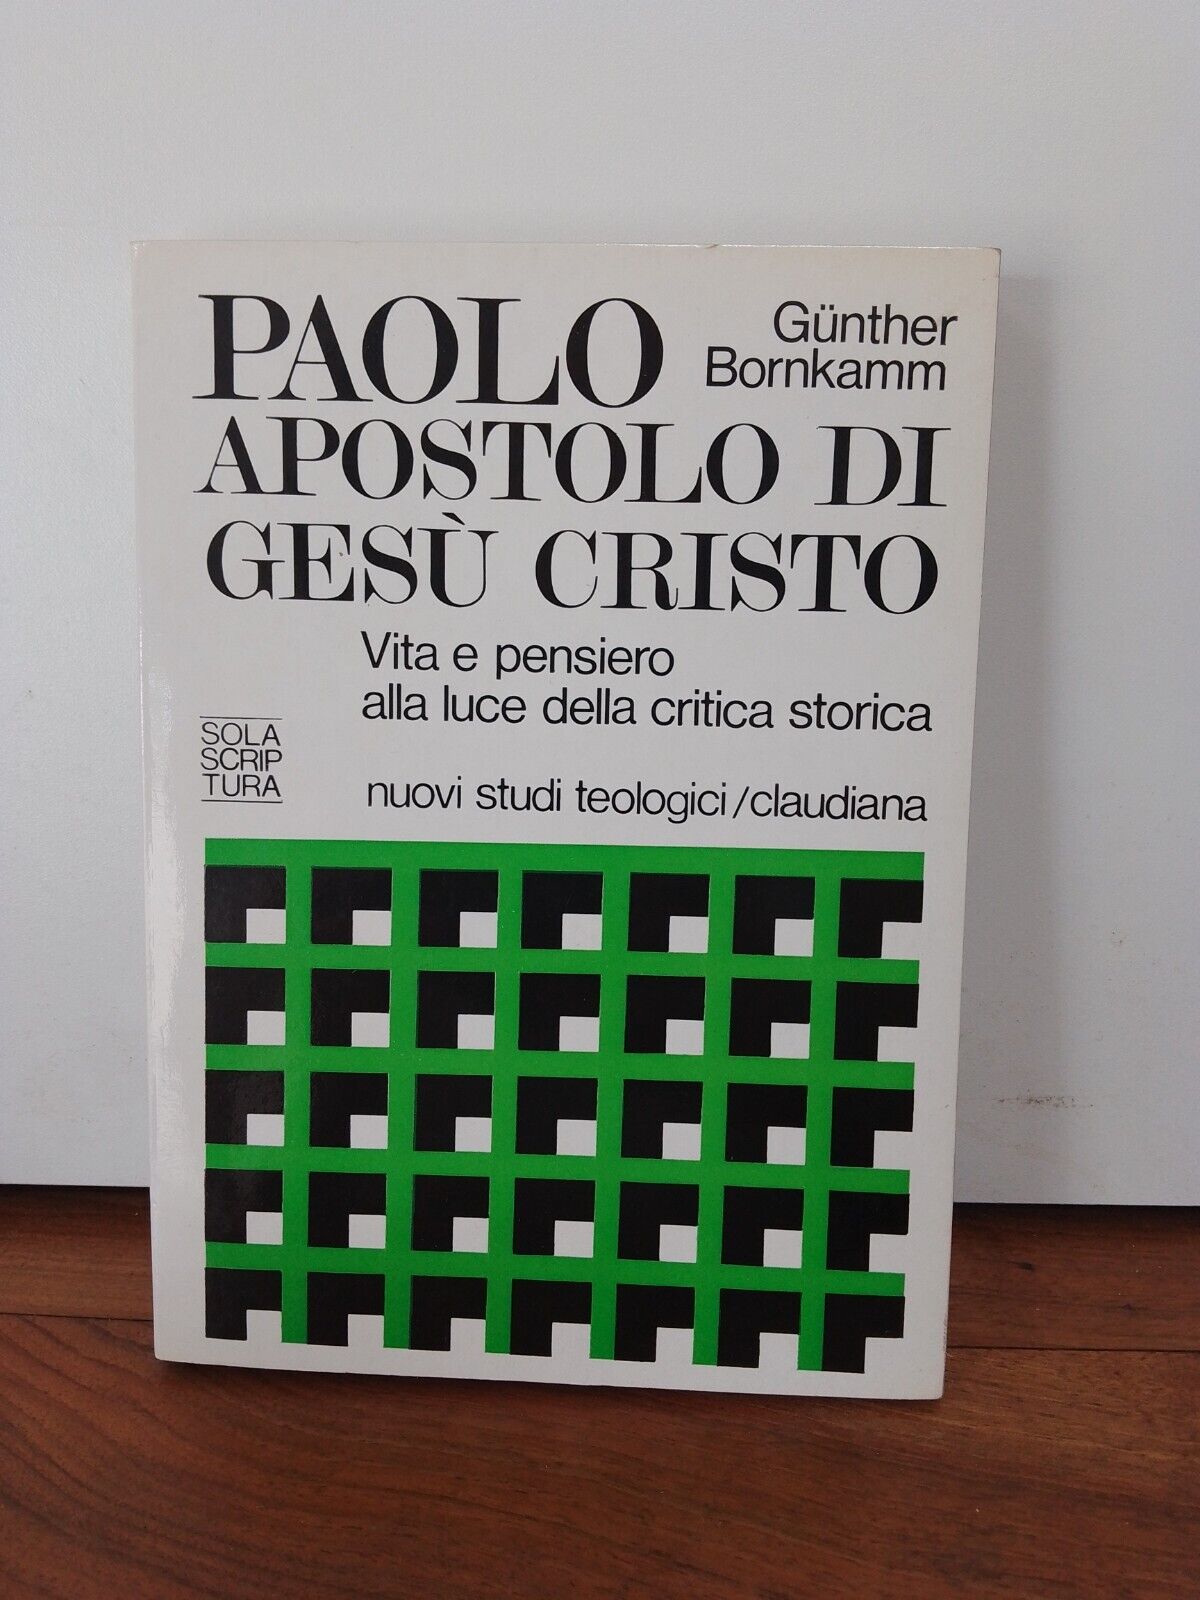 PAOLO APOSTOLO DI GESU' CRISTO, G.  Bornkamm, CLAUDIANA 1982, SOLA SCRIPTURA